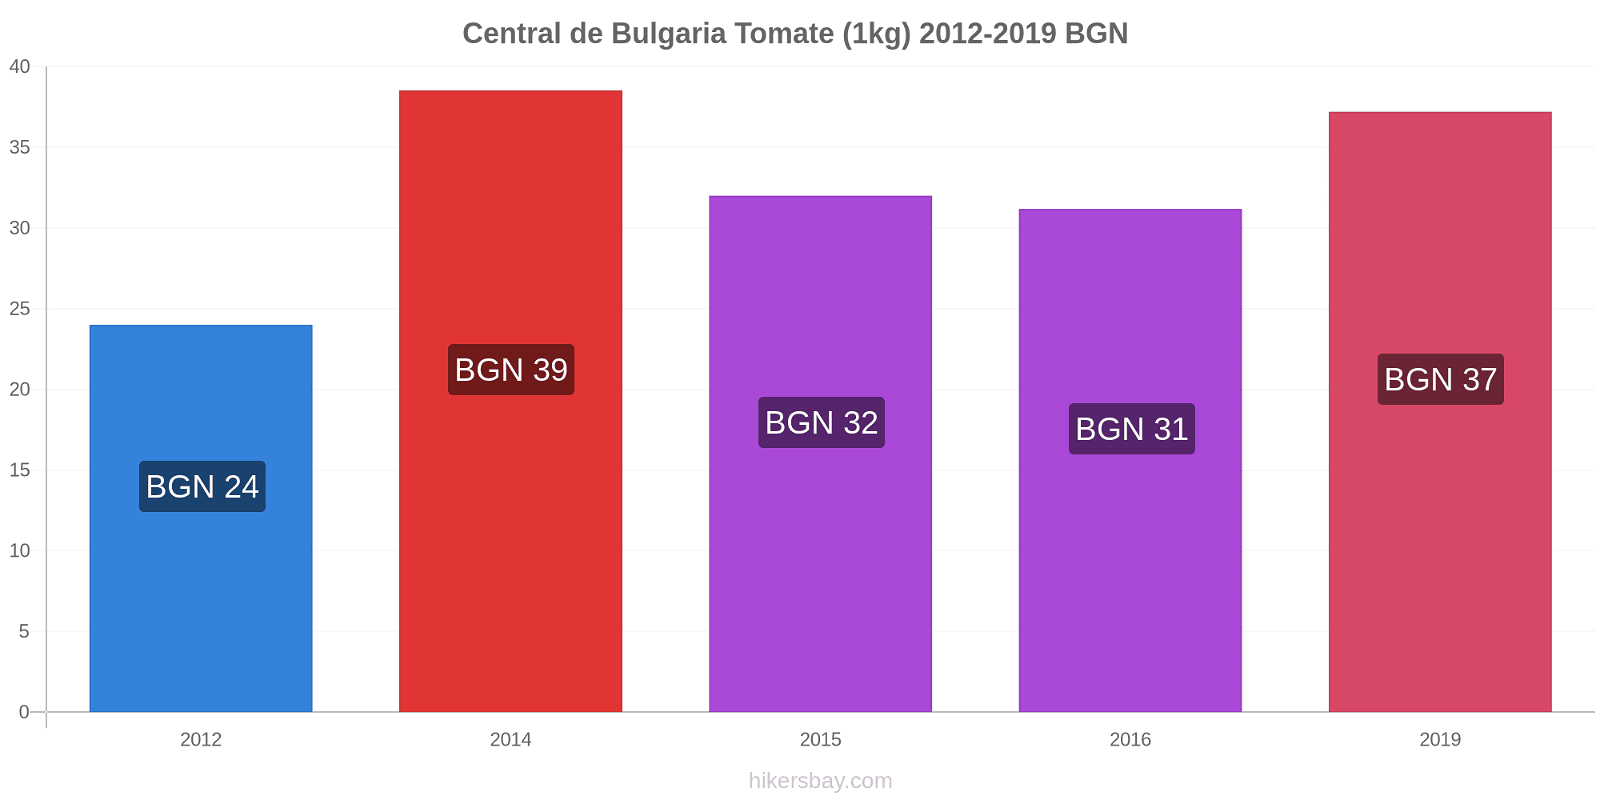 Central de Bulgaria cambios de precios Tomate (1kg) hikersbay.com